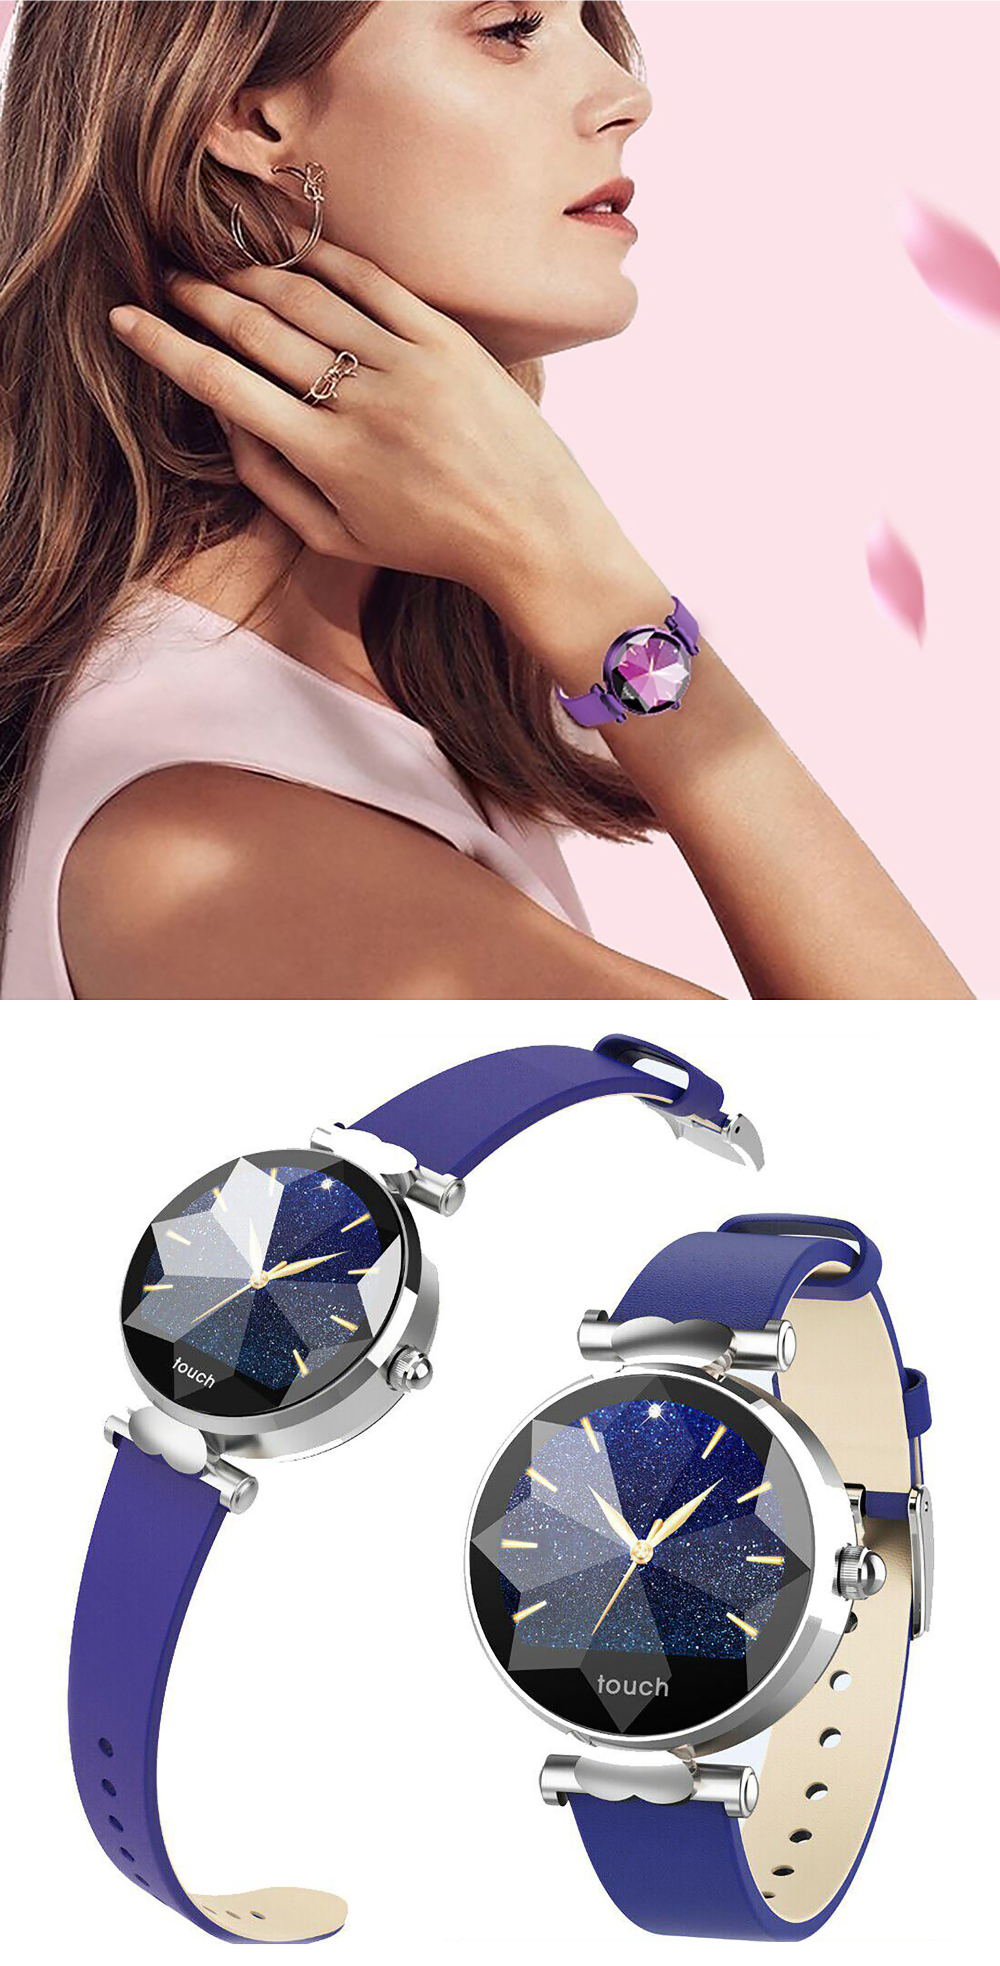 Ceas Smartwatch fitness fashion TKY-B80 Piele cu functie de monitorizare ritm cardiac, Tensiune arteriala, Monitorizare somn, Notificari Apel/ SMS, Argintiu – Albastru